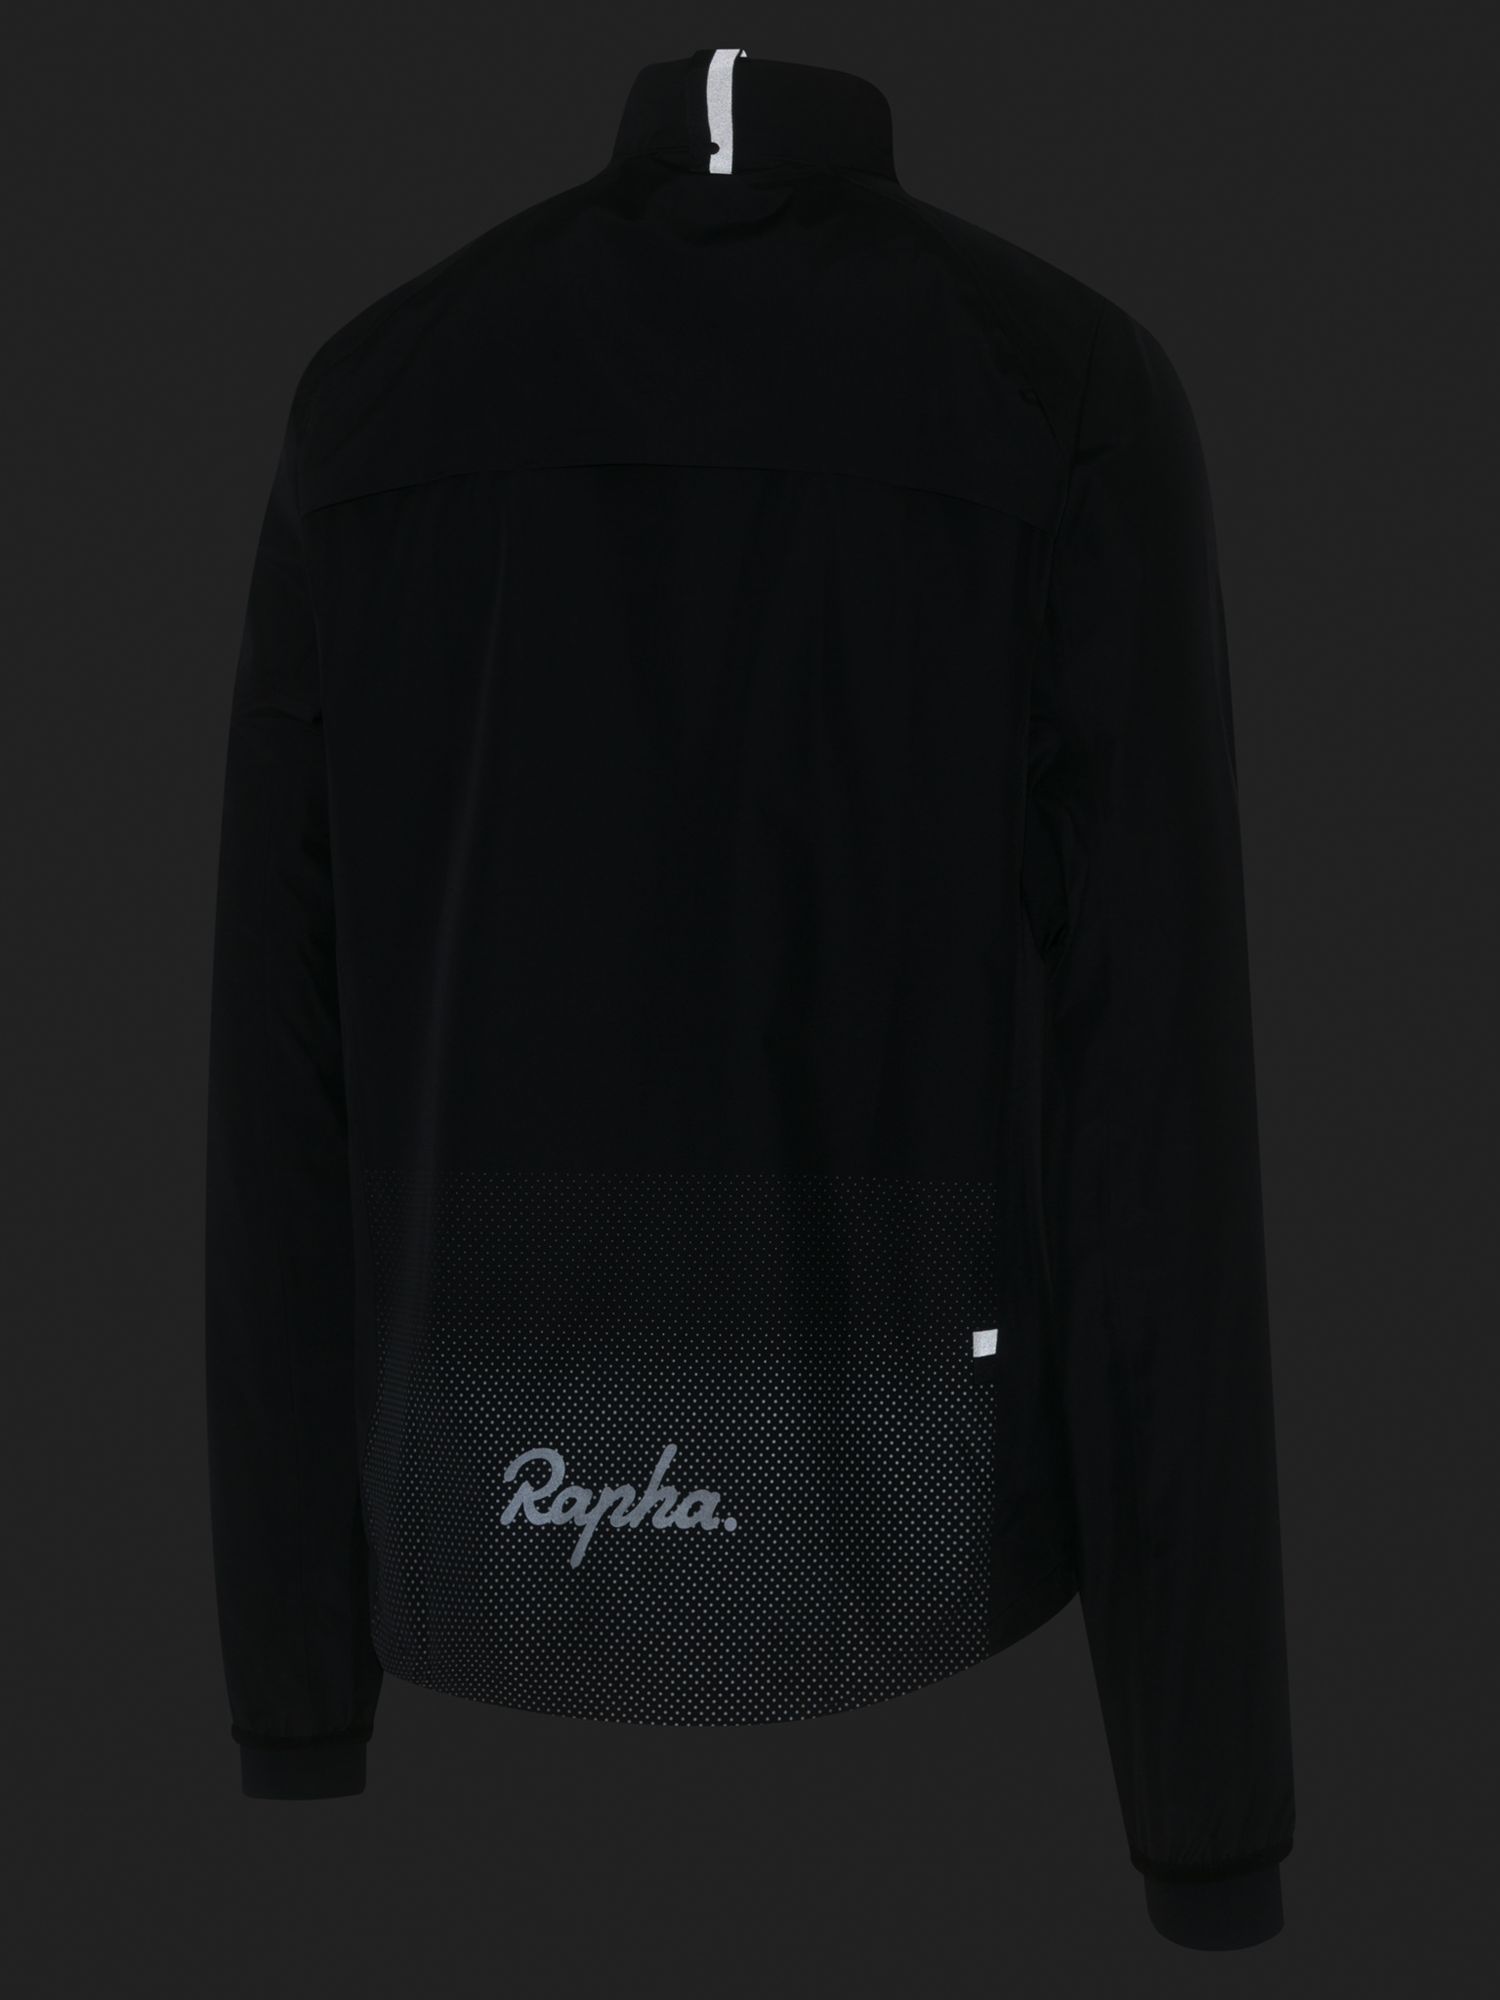 Rapha Commuter Men's Waterproof Cycling Jacket, Black/Silver, S